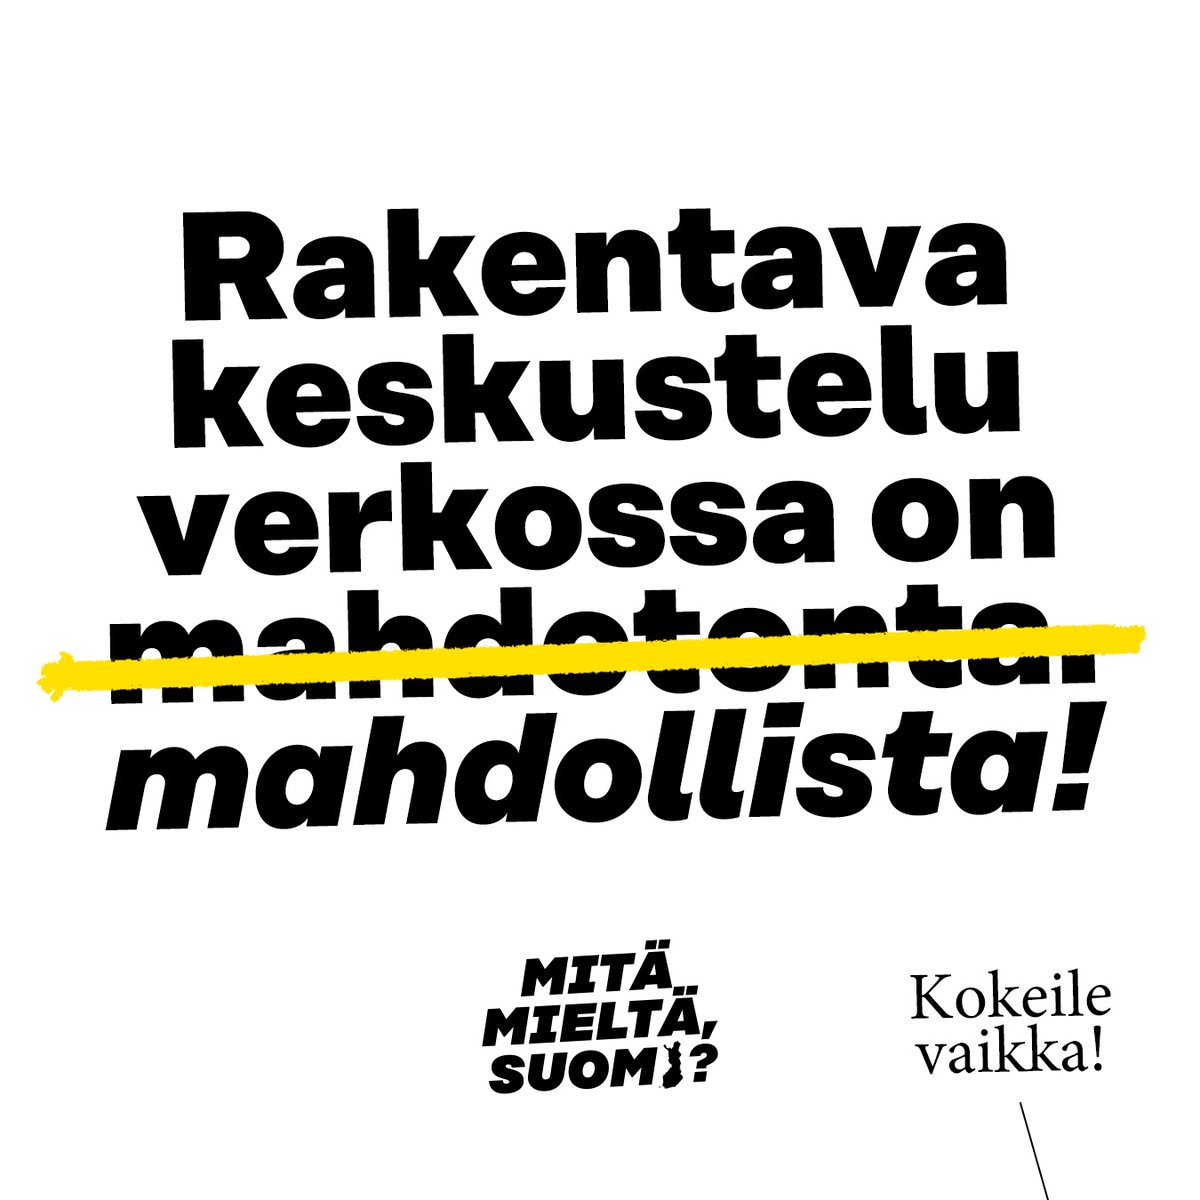 Vietä kansainvälistä demokratiapäivää – kokeile uudenlaista verkkokeskustelua! Kutsumme kaikki suomalaiset kokeilemaan uudenlaista verkkokeskustelua neljän viikon ajan. Aiheena on Suomen suunta. #MitäMieltäSuomi 1/4 Kokeile: sitra.fi/mitamieltasuomi